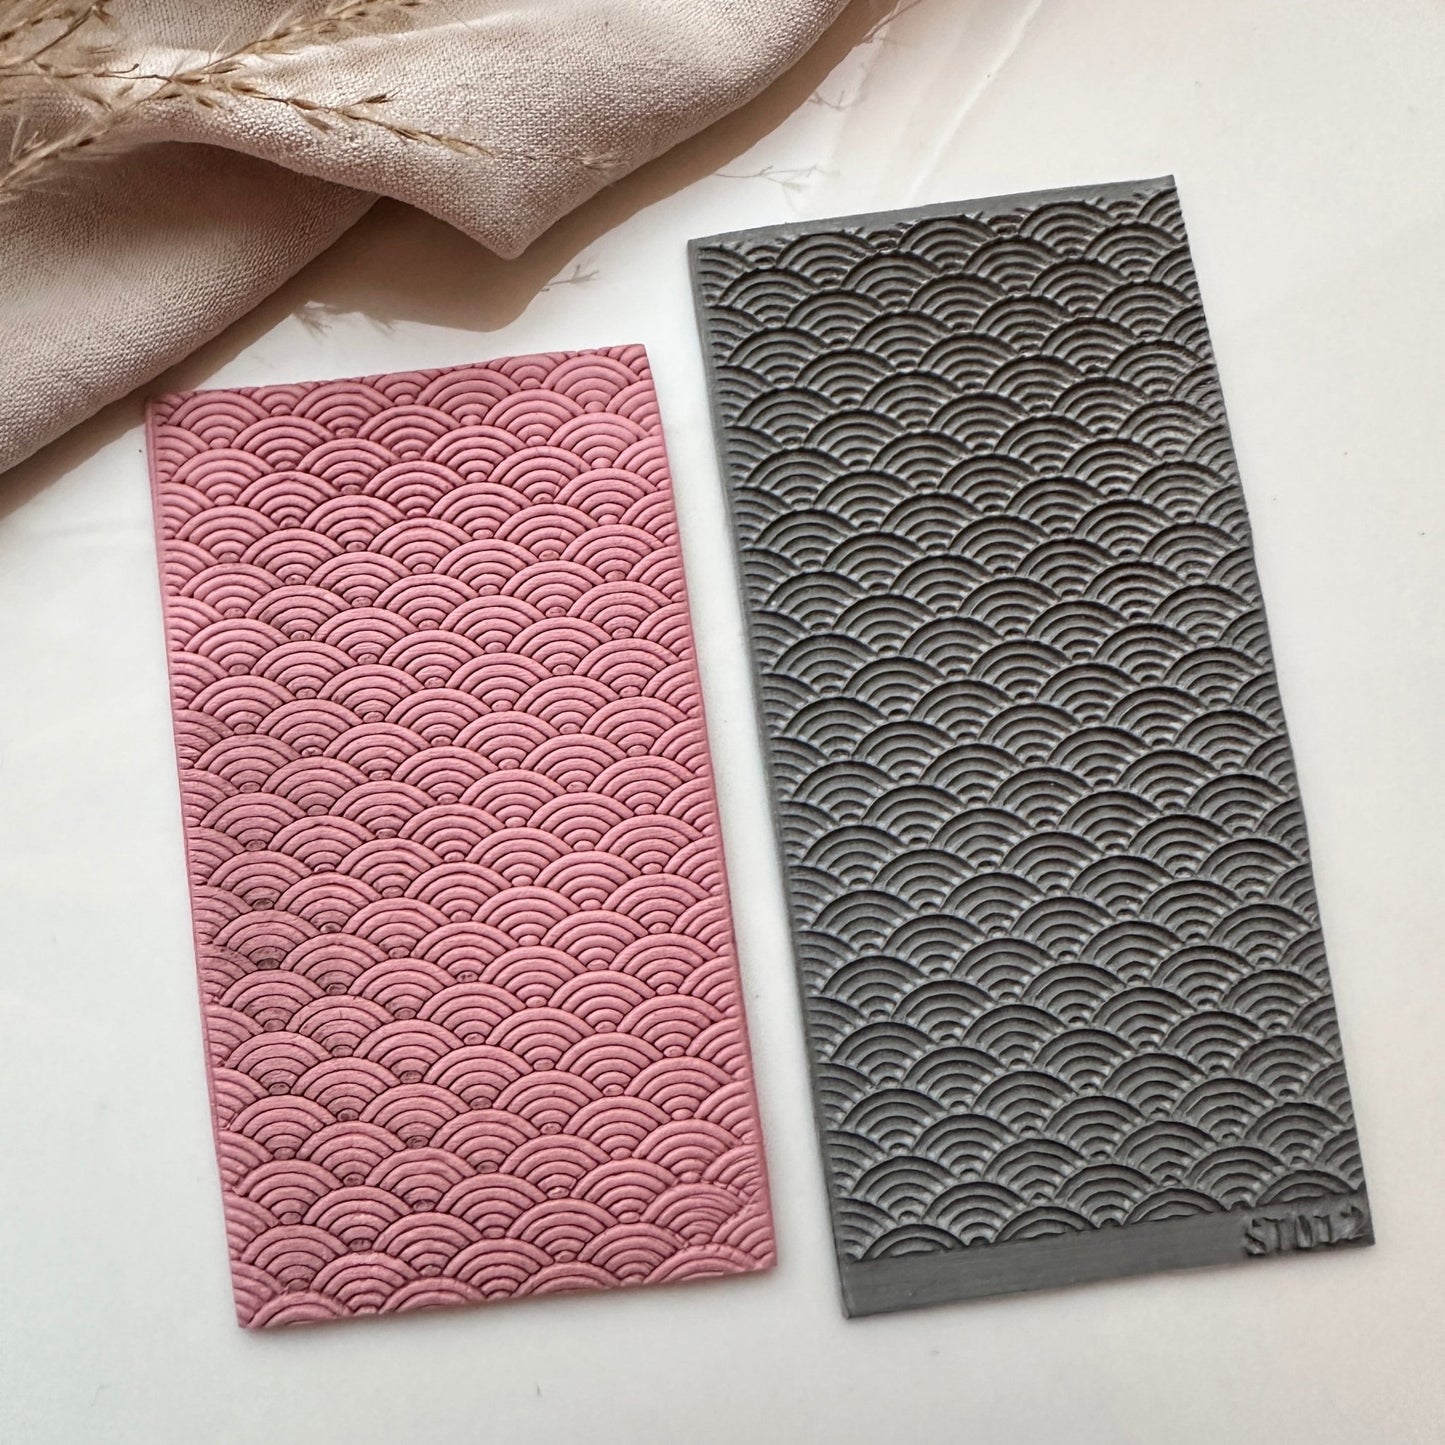 Texture mat scales - S.I.Orginals